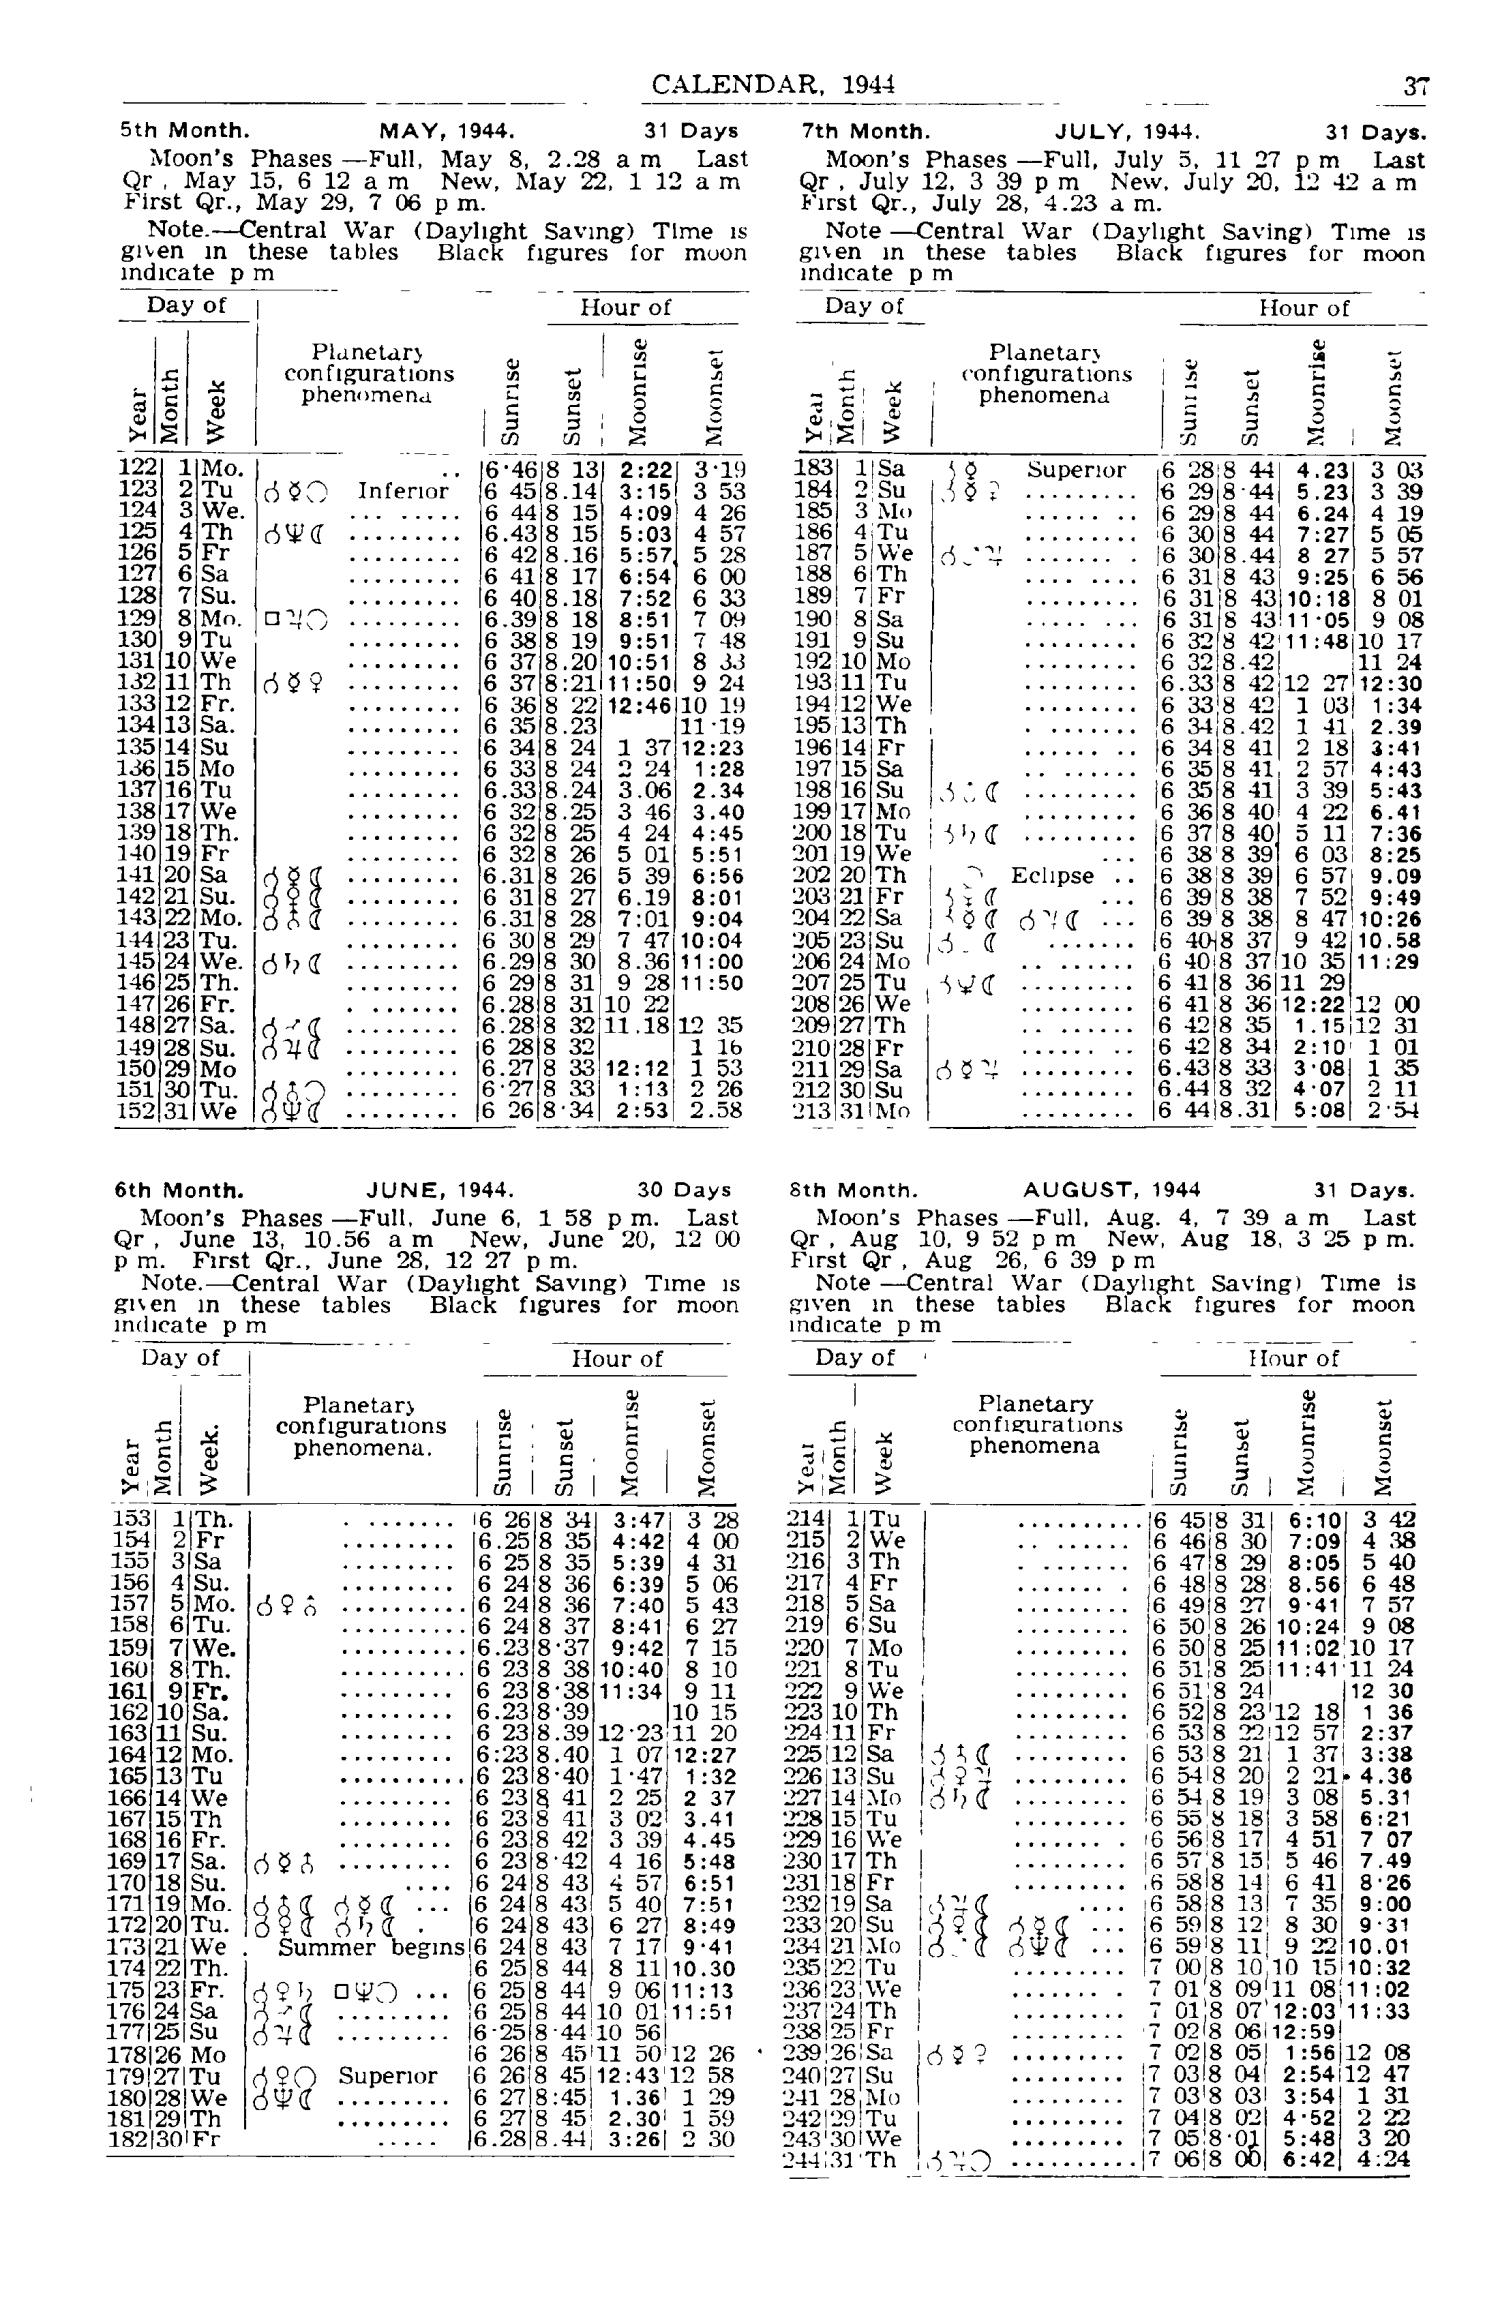 Texas Almanac, 1943-1944
                                                
                                                    37
                                                